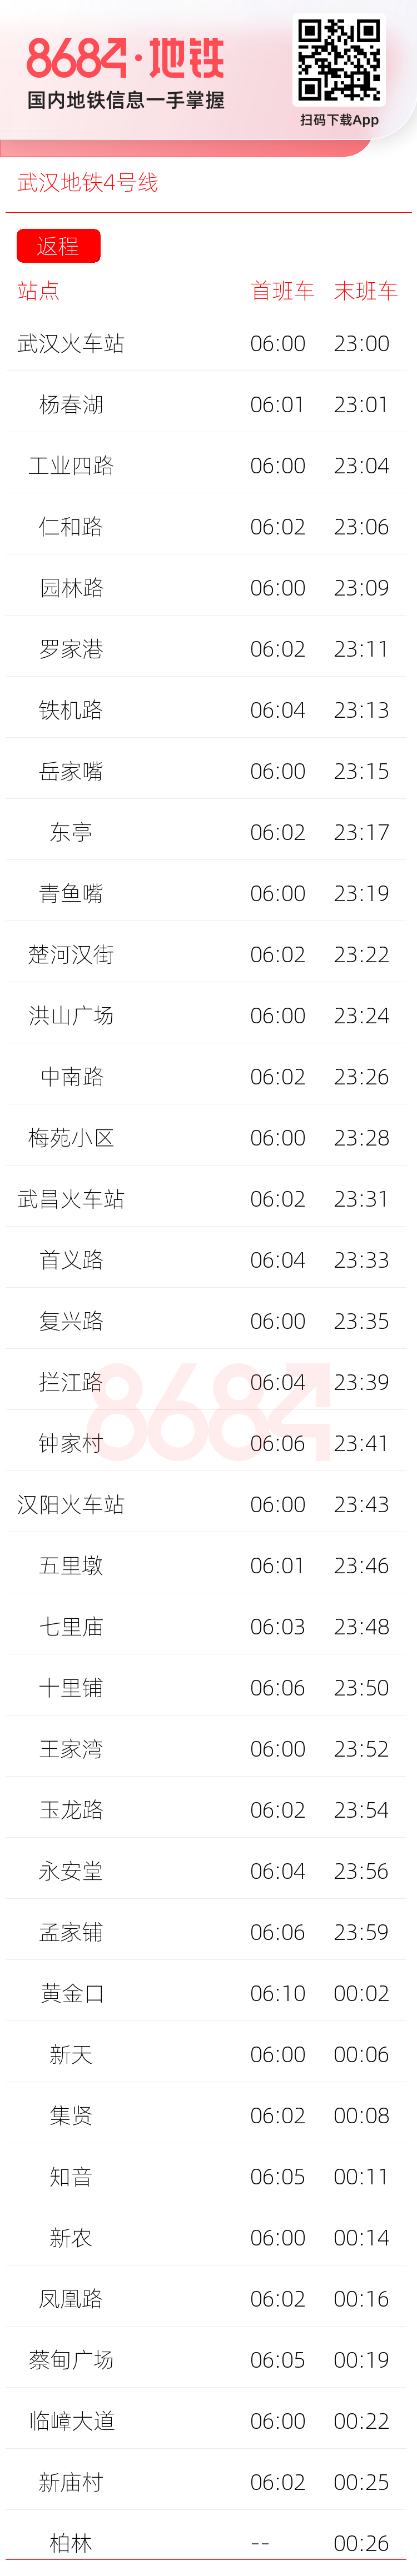 武汉地铁4号线运营时间表